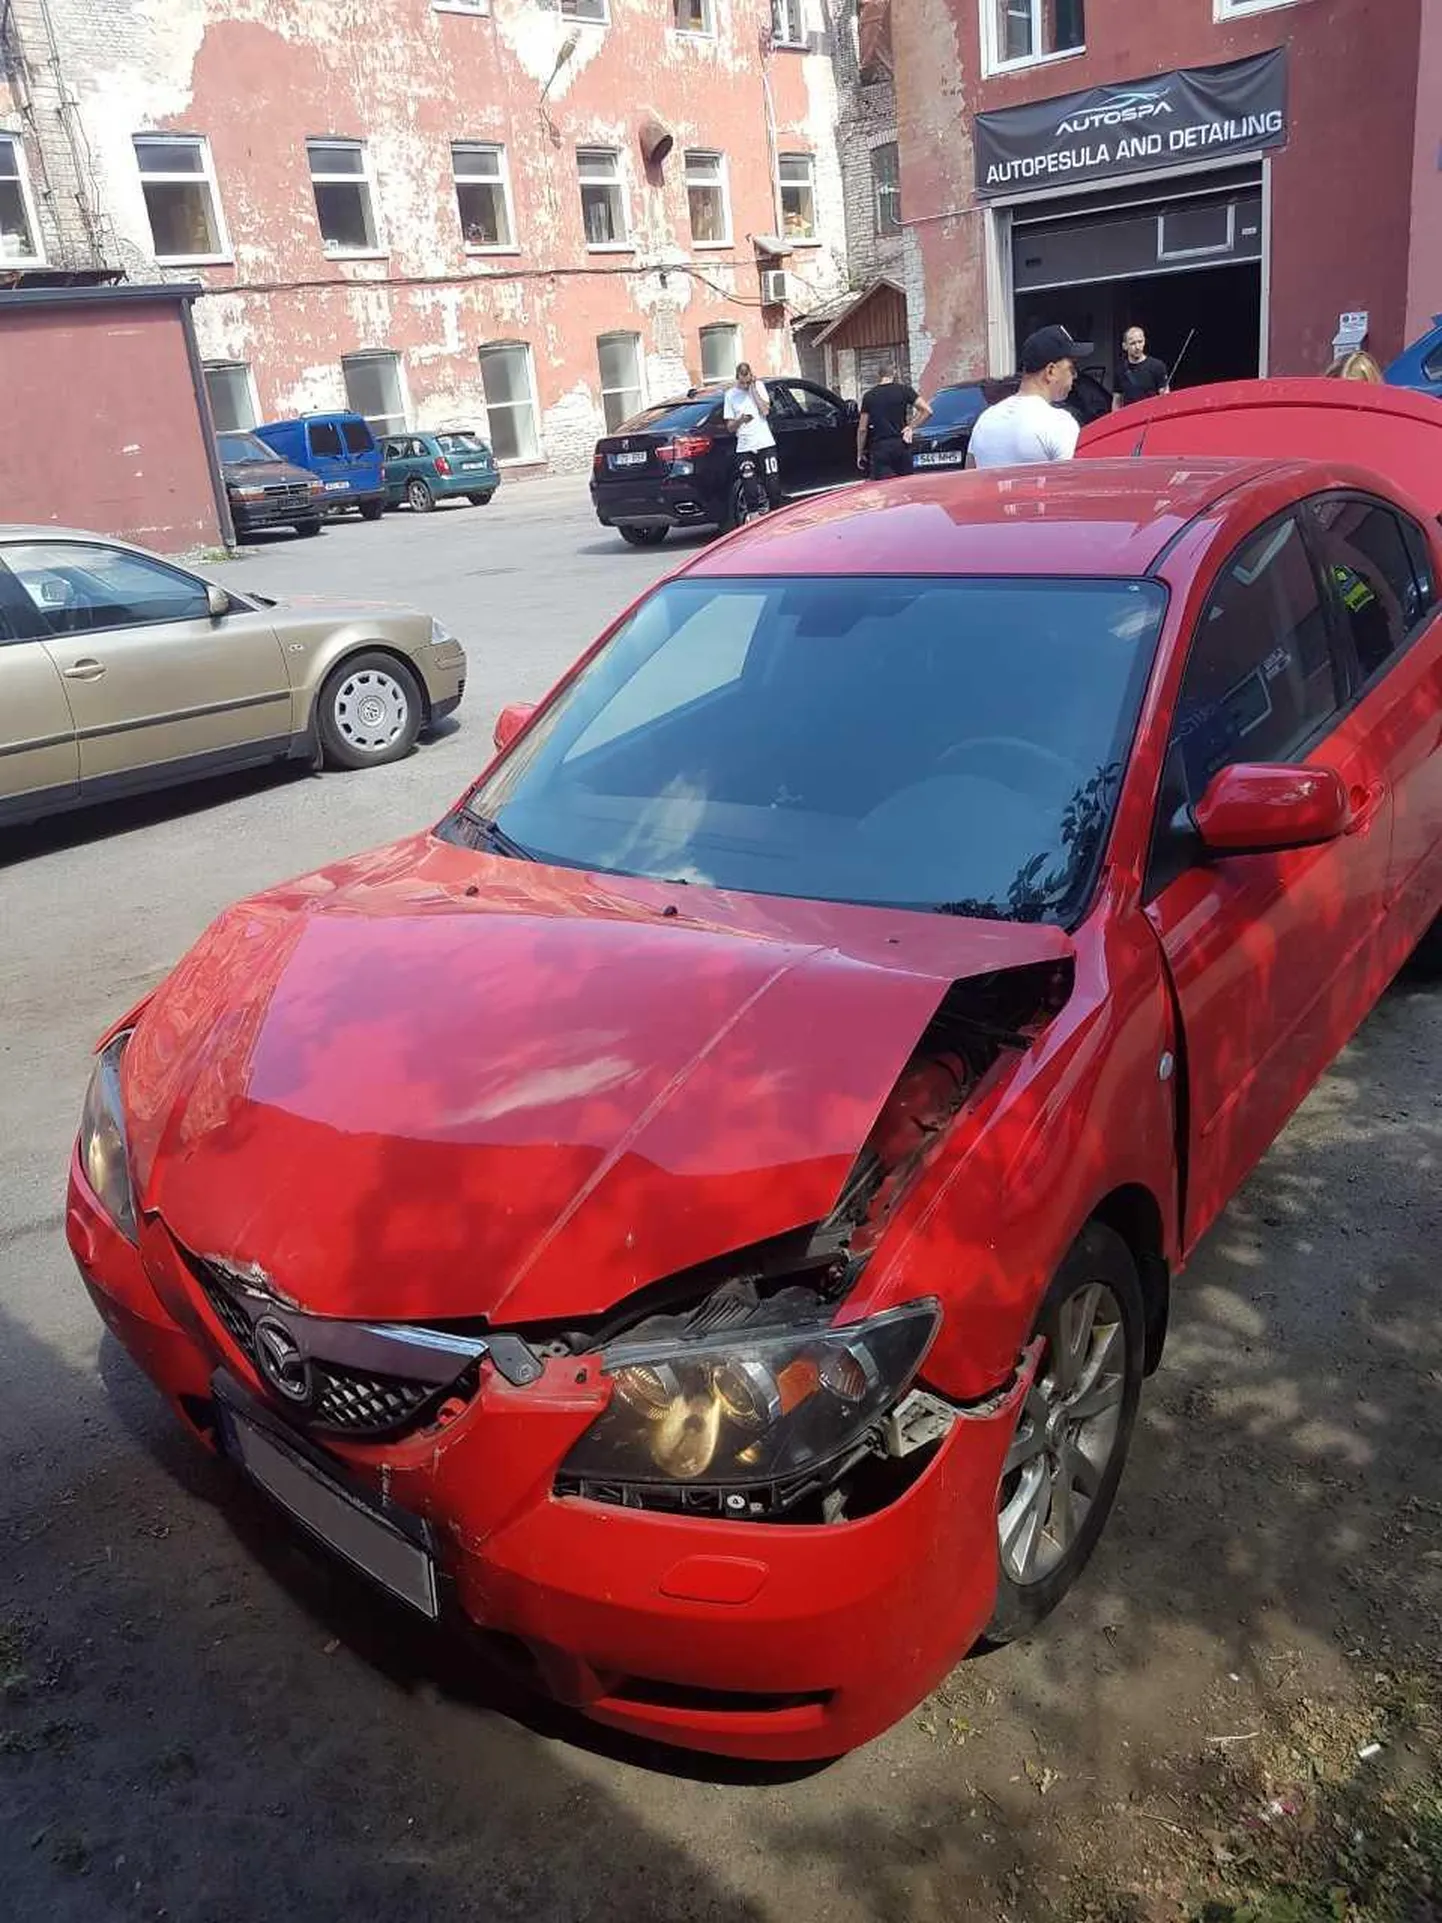 Машина клиентки перед автомойкой, где ее разбили при невыясненных обстоятельствах.